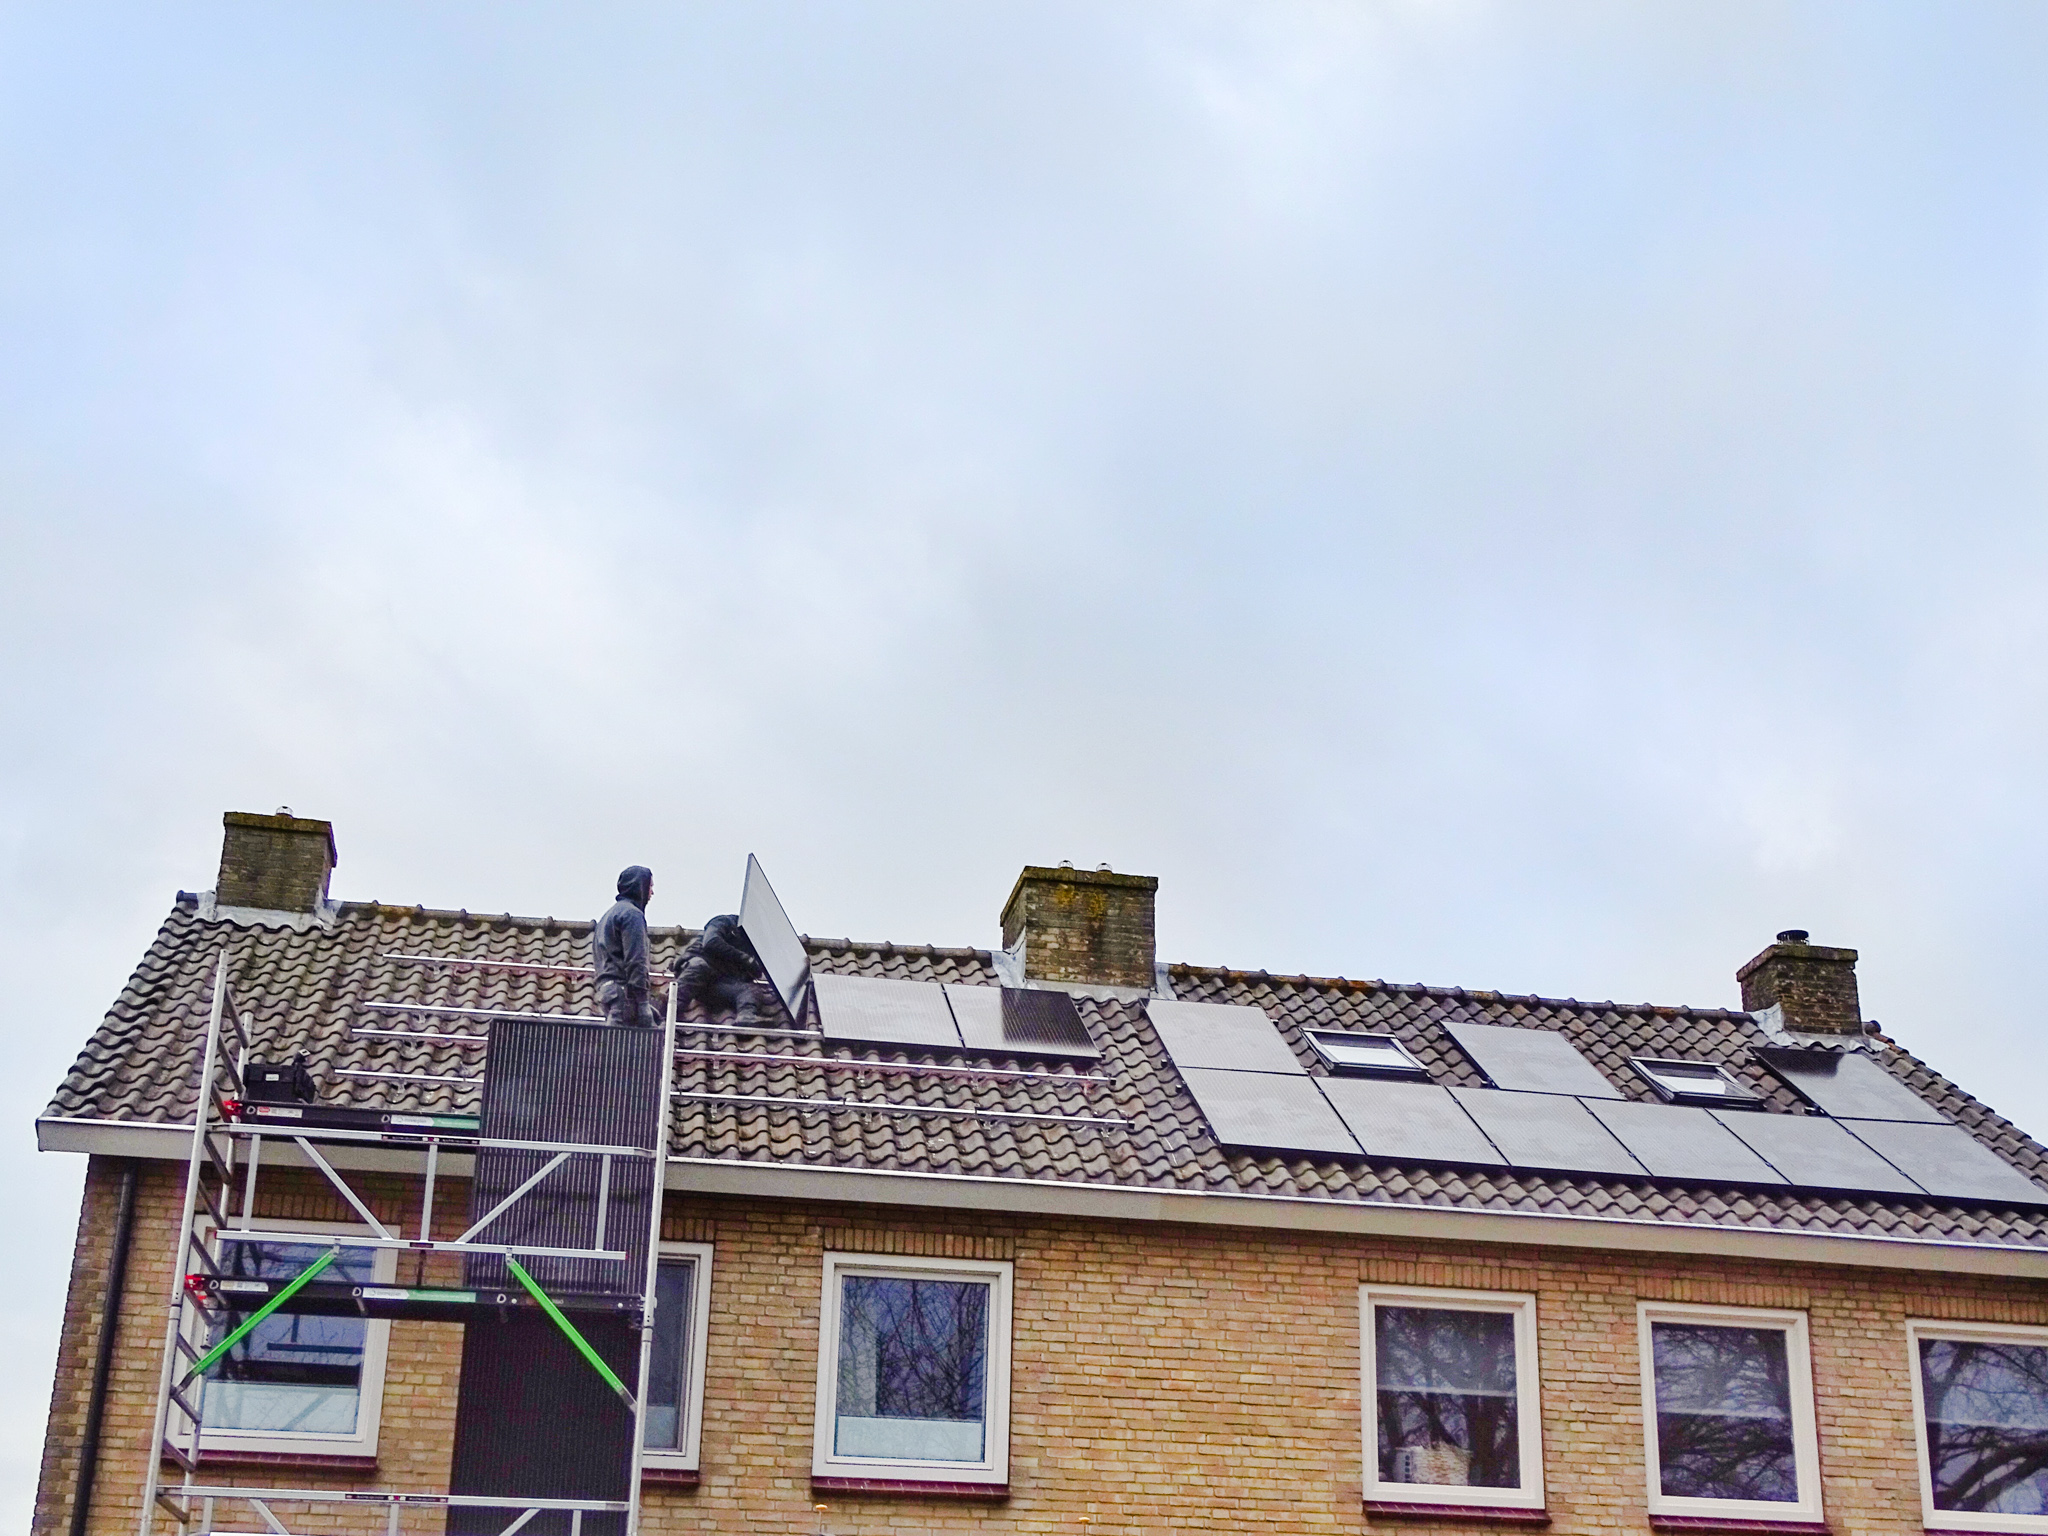 installateurs leggen zonnepanelen op het dak van een woning